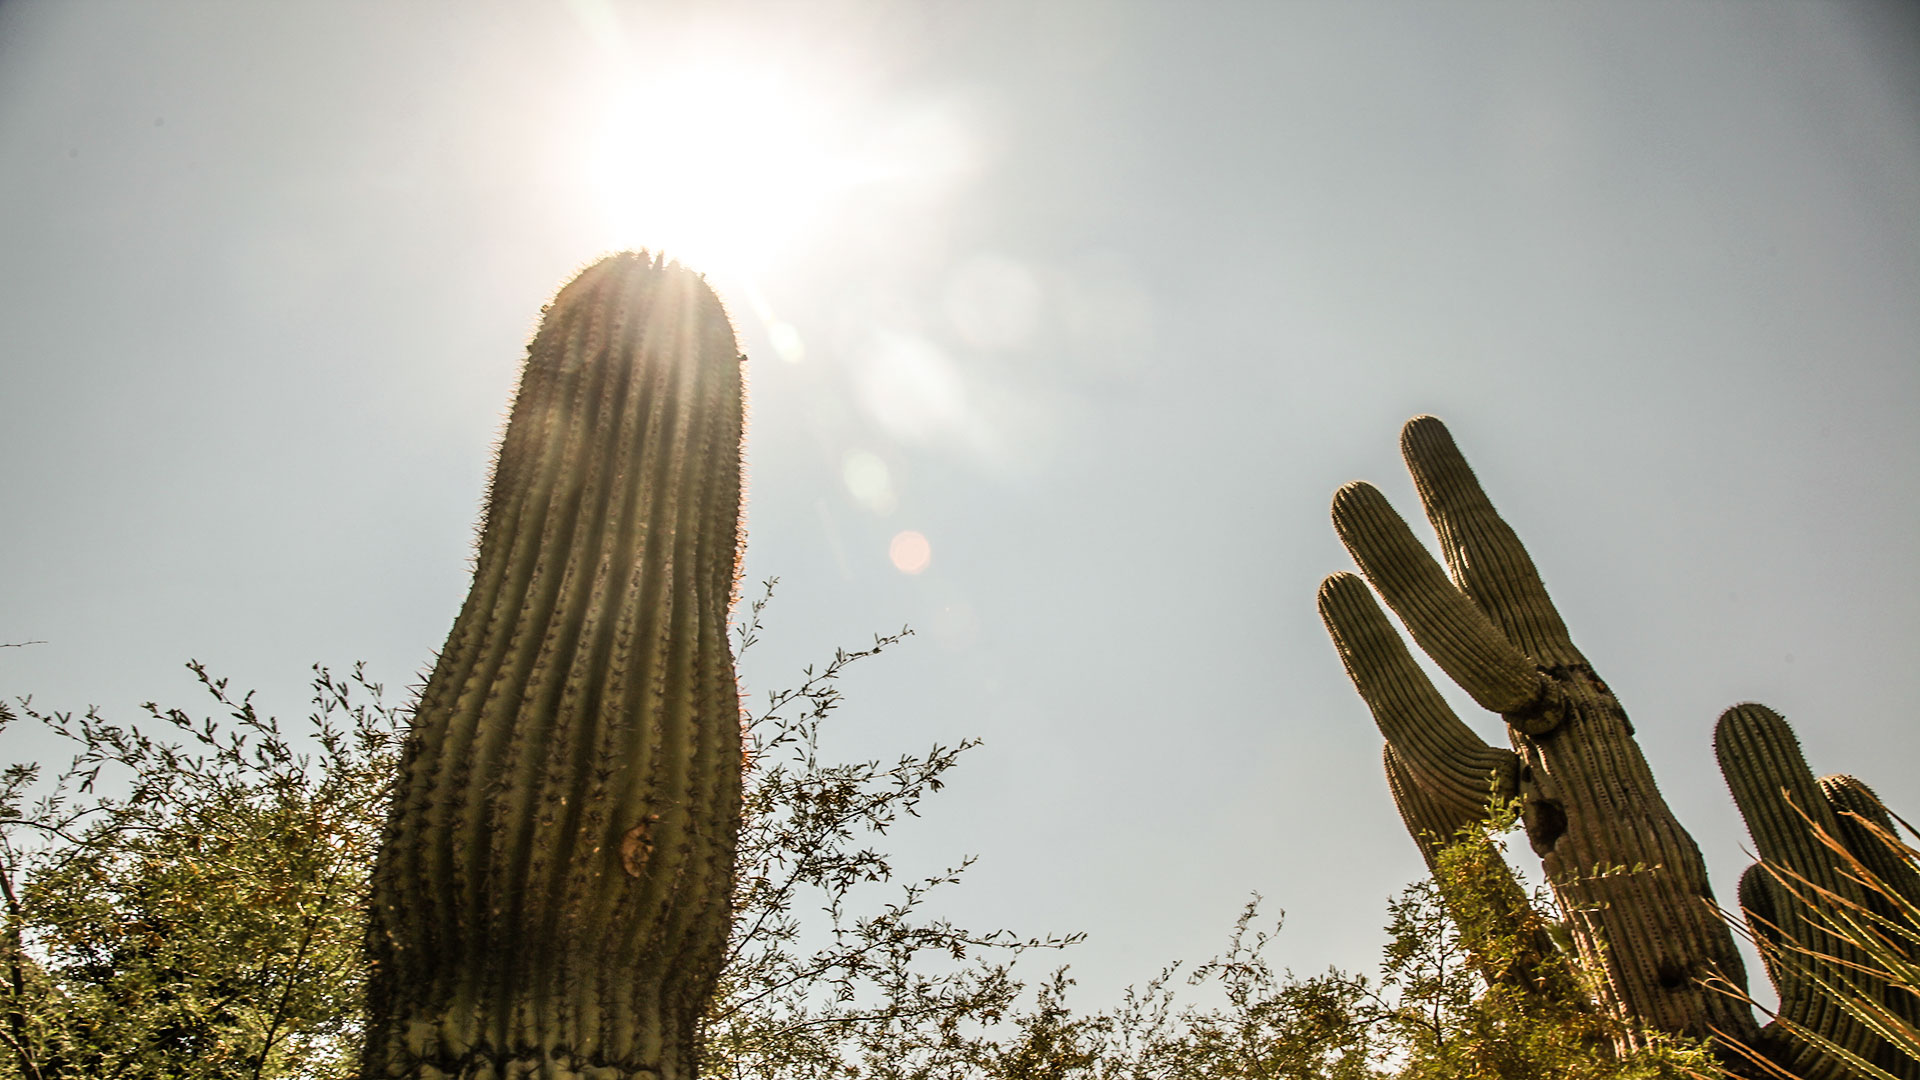 Saguaro cactus amid mid-afternoon sun.